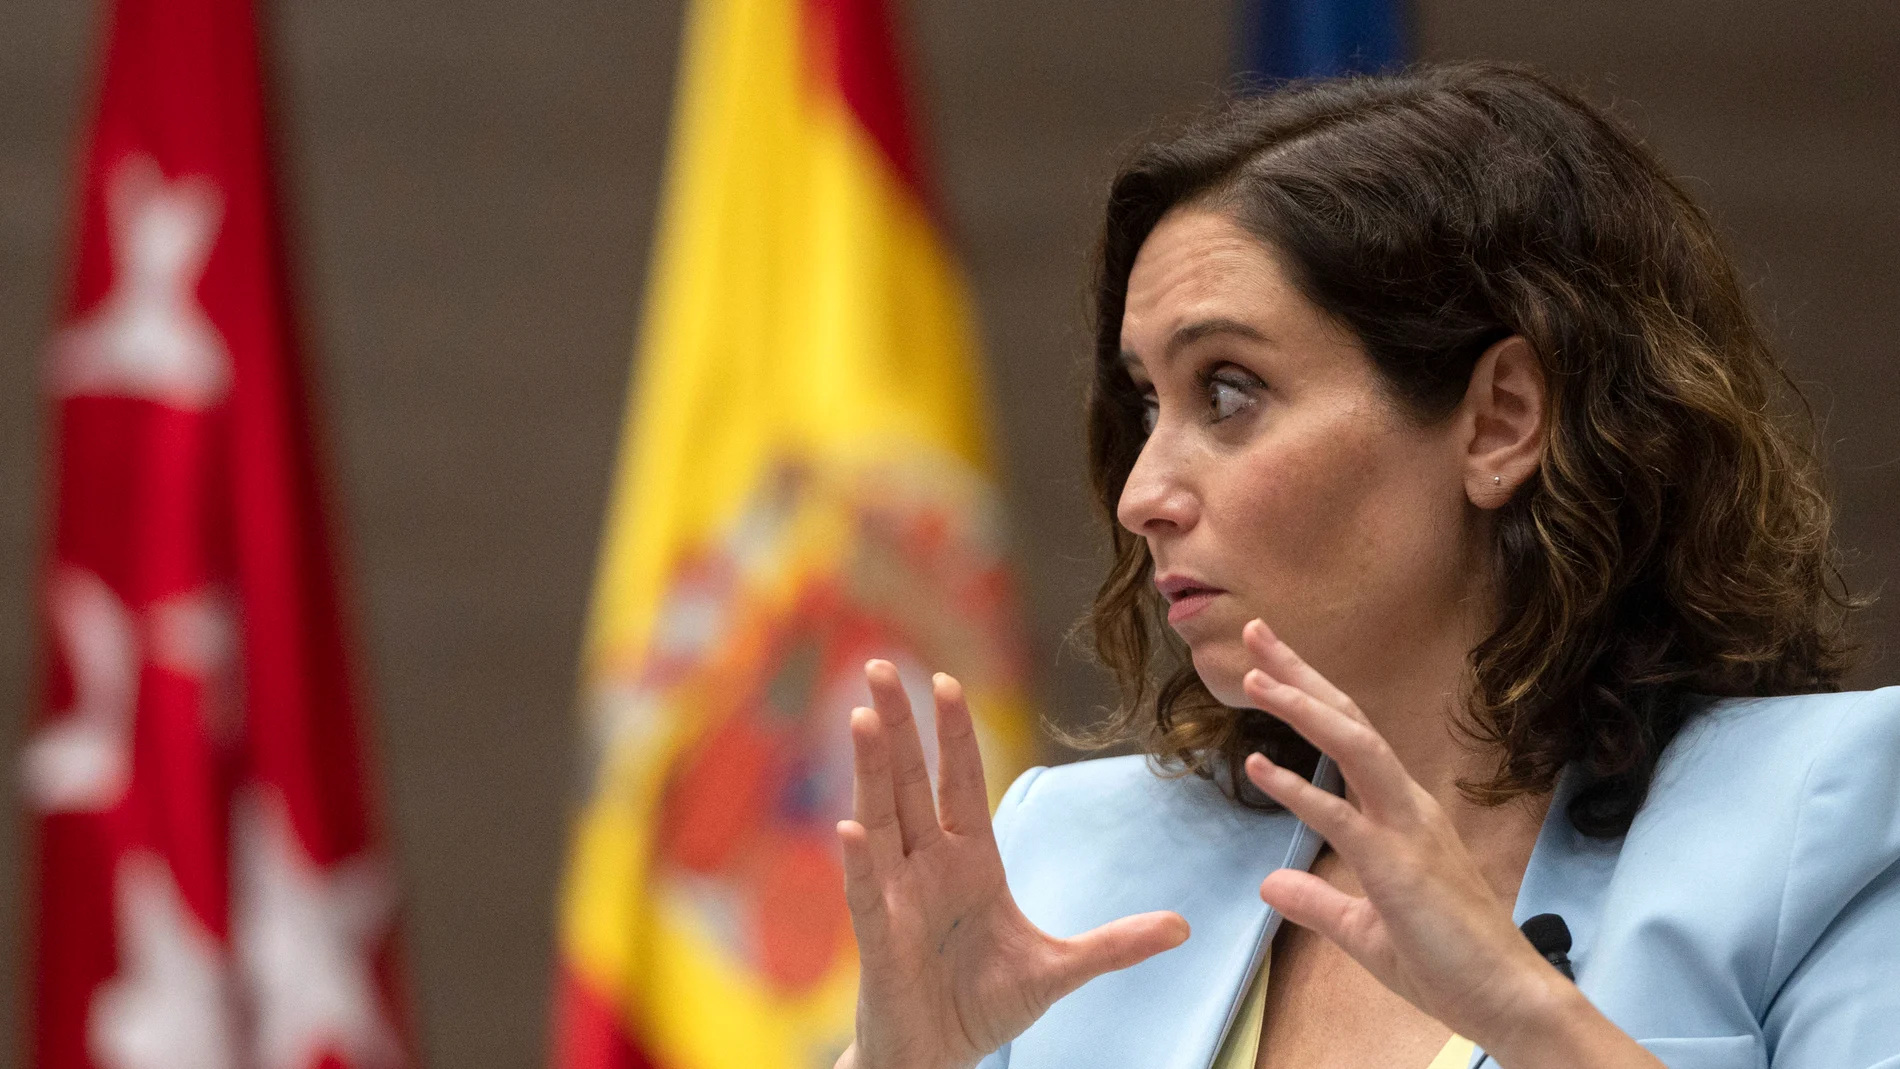 La presidenta de la Comunidad de Madrid, Isabel Díaz Ayuso, interviene en la sesión de apertura del Título de Experto en Liderazgo y Compromiso Cívico, en la Universidad CEU San Pablo